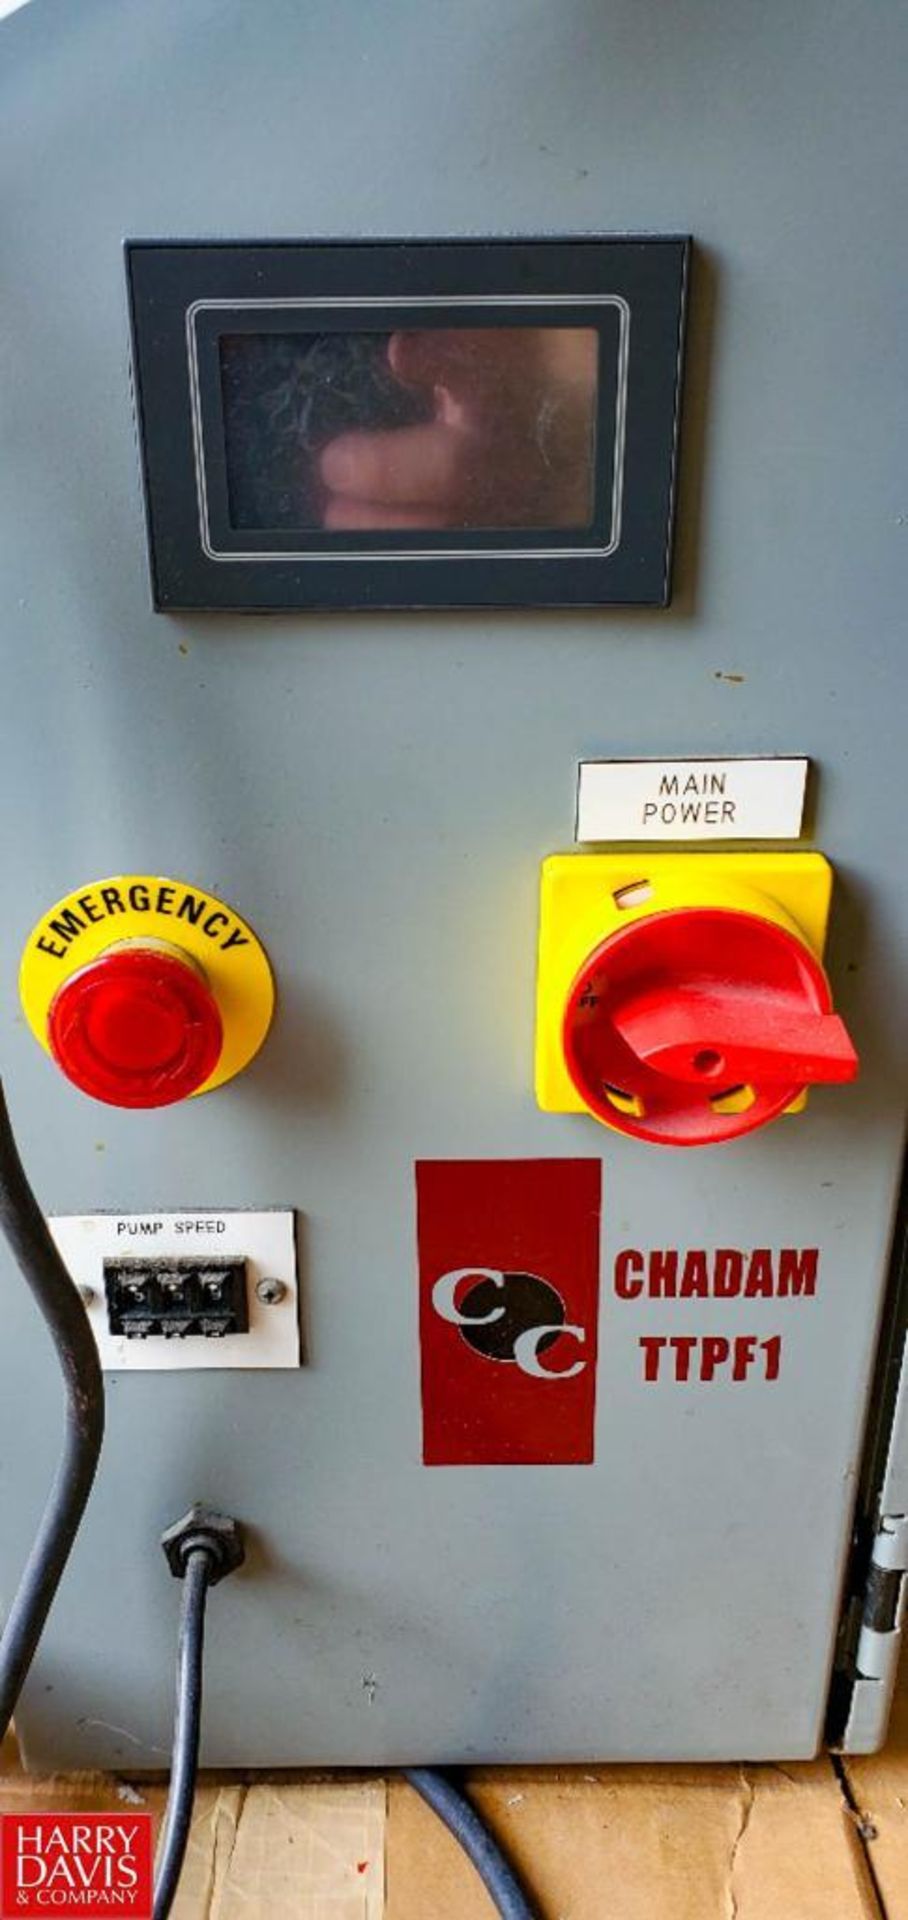 Chadam Chiller , Model: TTPF1 (Location: Miami, FL) - Rigging Fee: $40